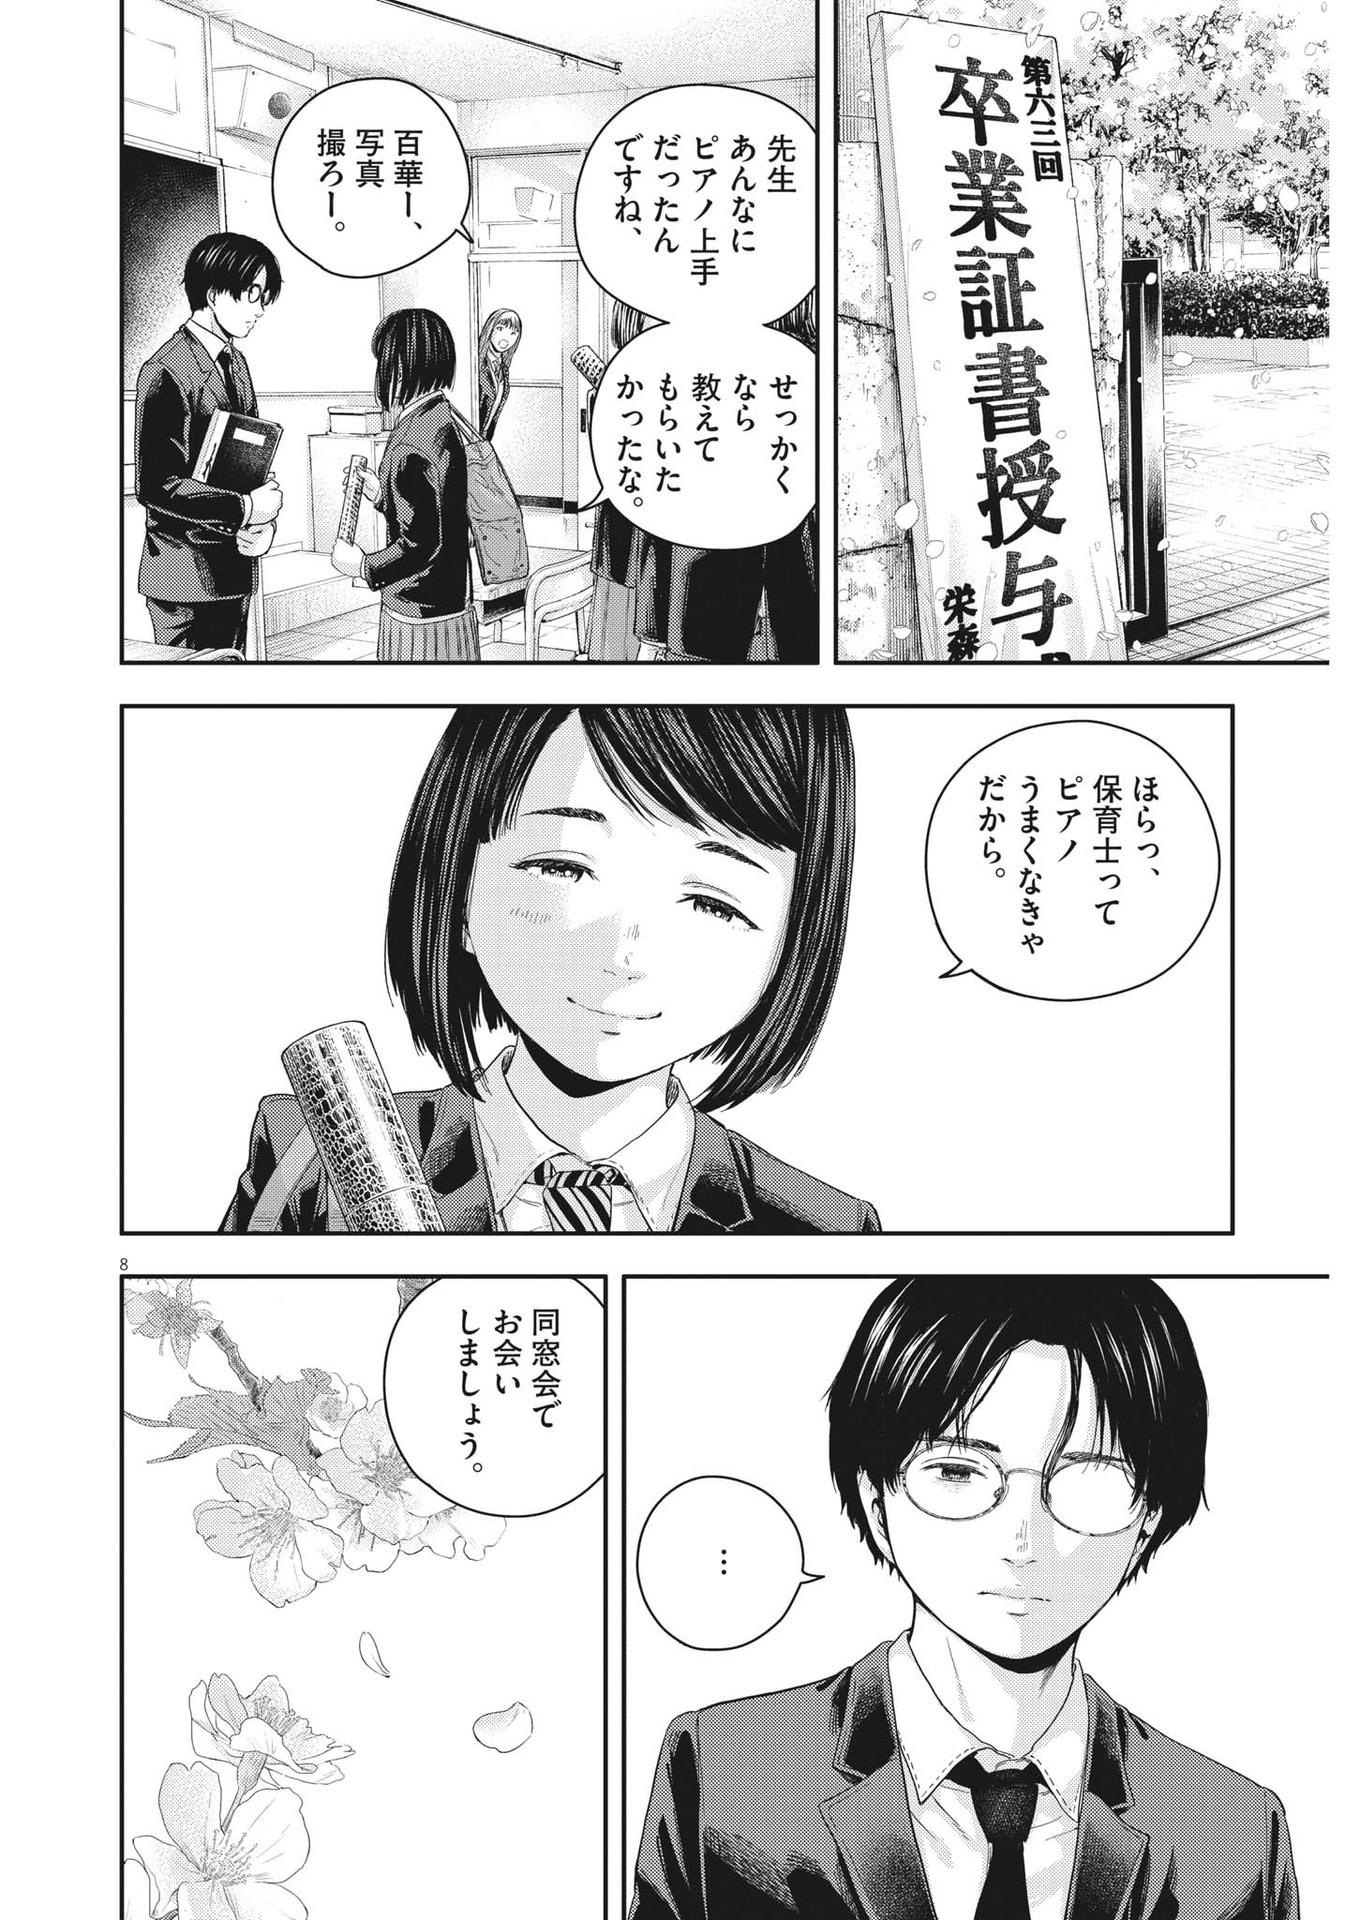 Yumenashi-sensei no Shinroshidou - Chapter 21 - Page 8